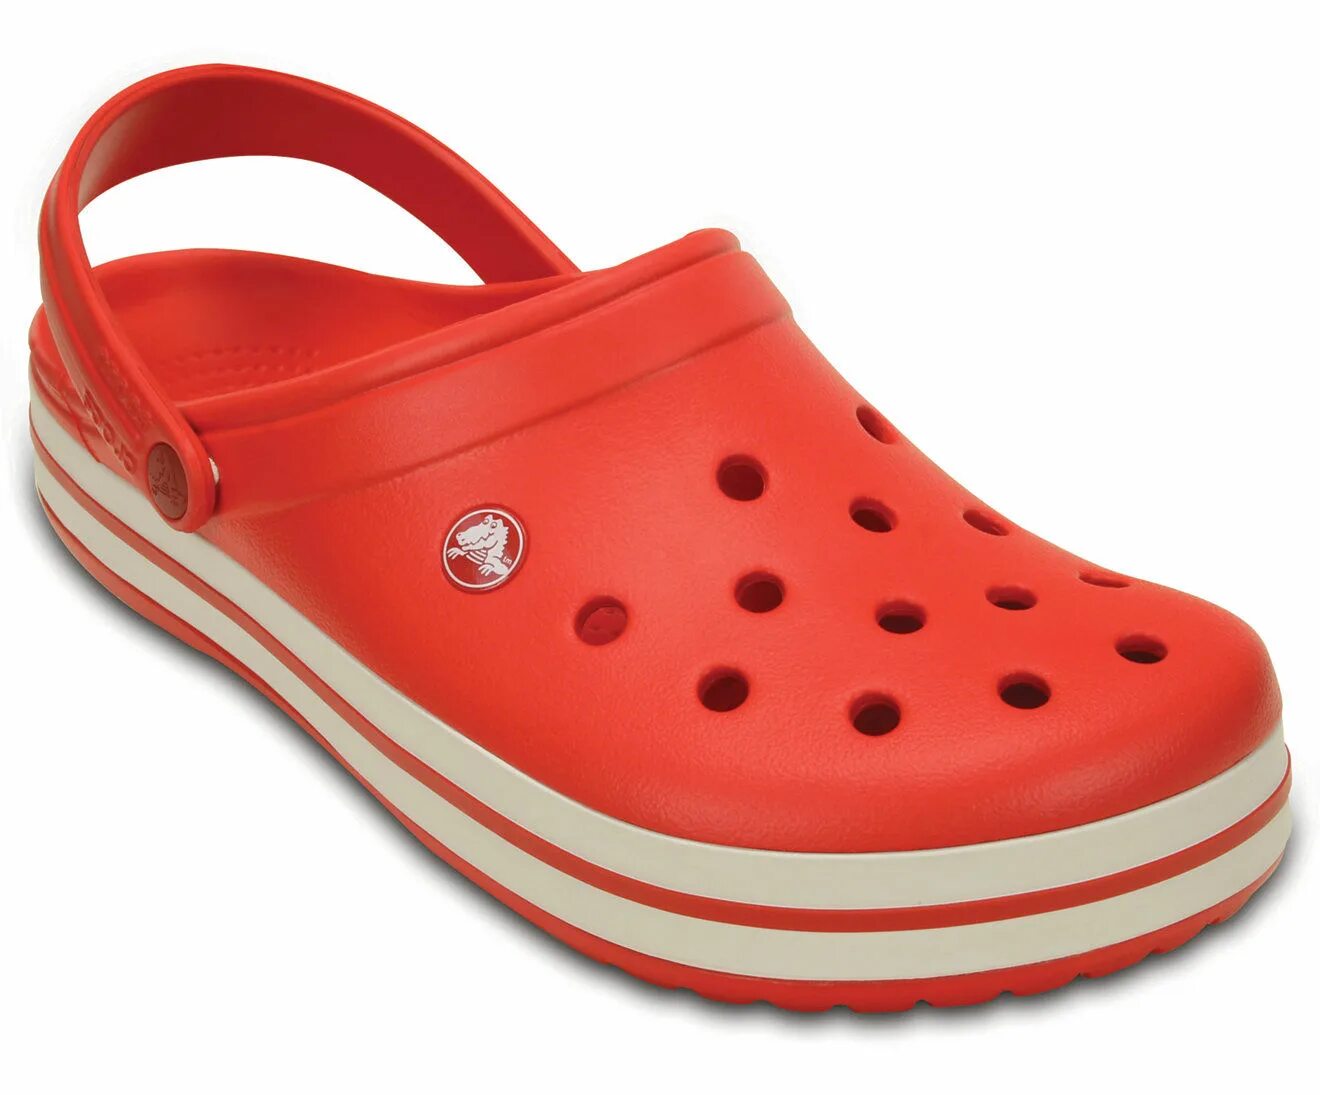 Кроксы сабо оригинал. Сабо Crocs Crocband White. Crocband Crocs красные. Сабо Crocs Crocband Clog. Crocband 11016.